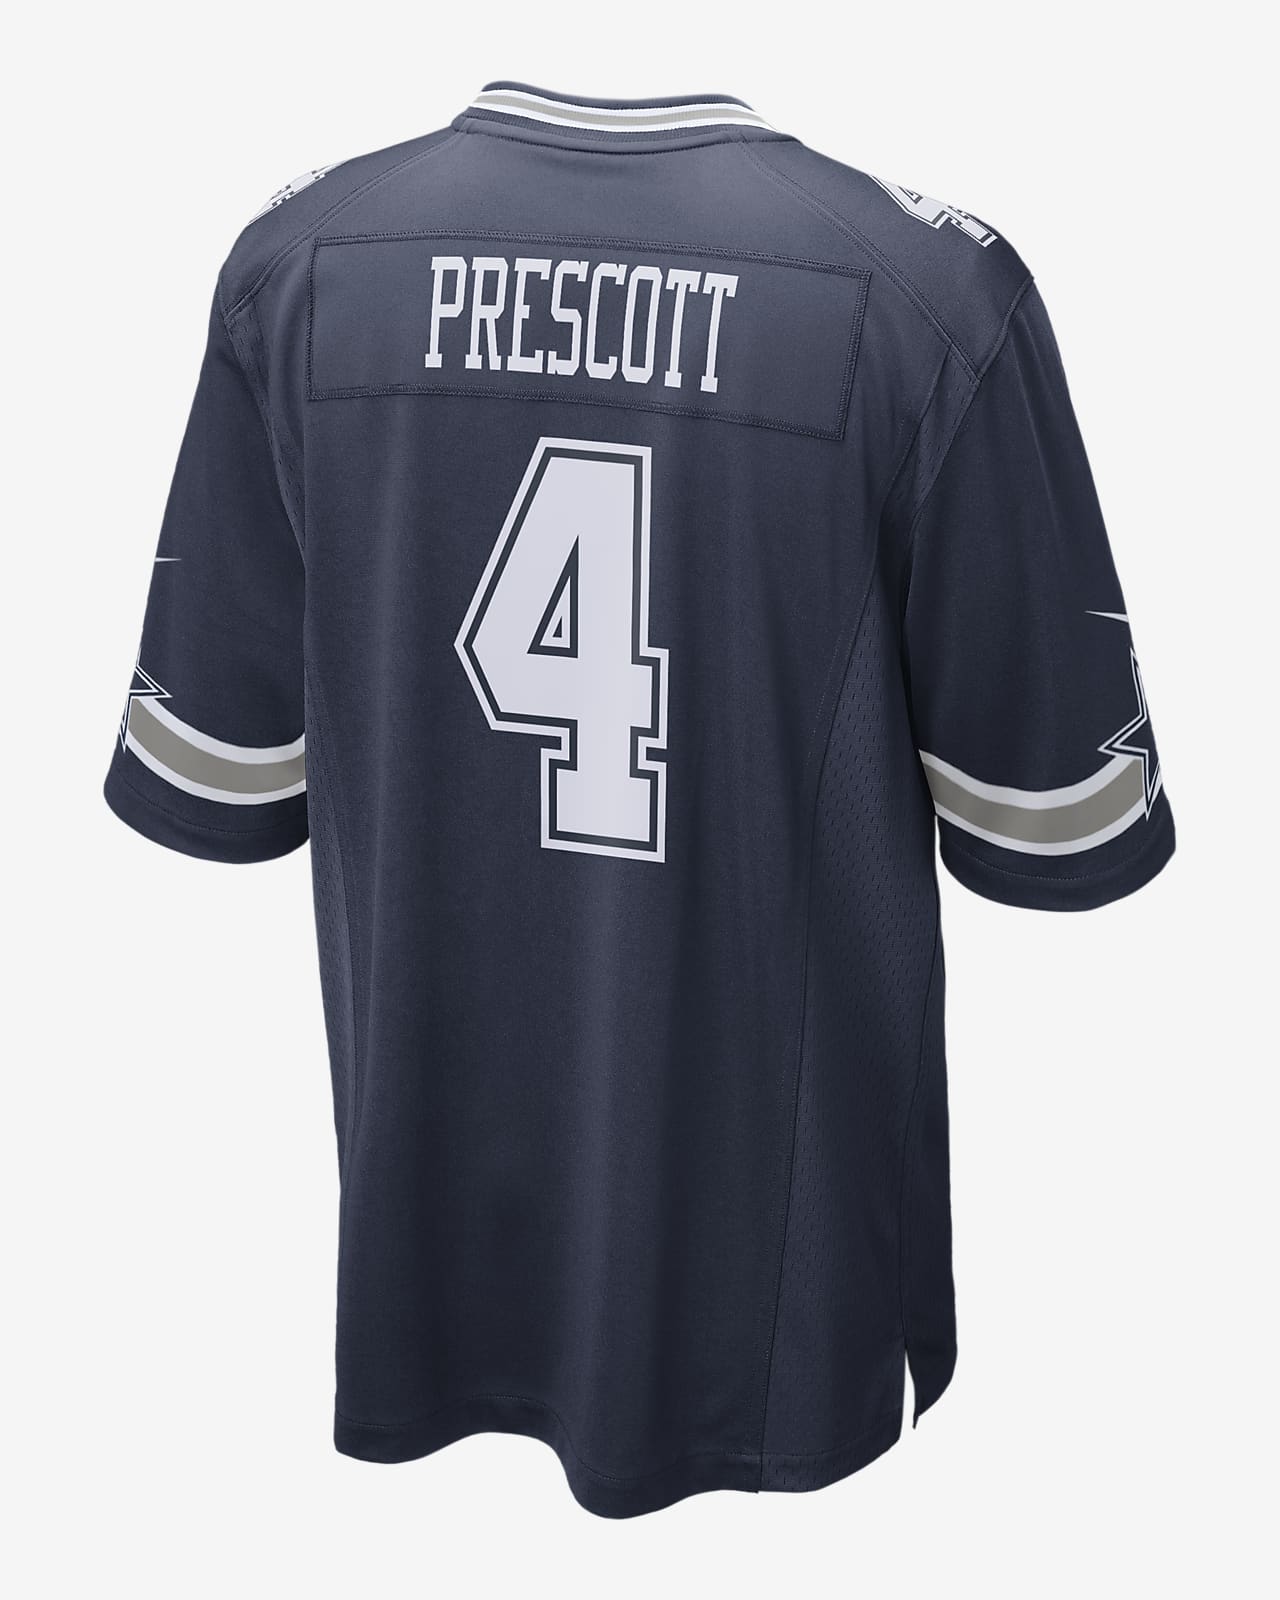 dak prescott on field jersey